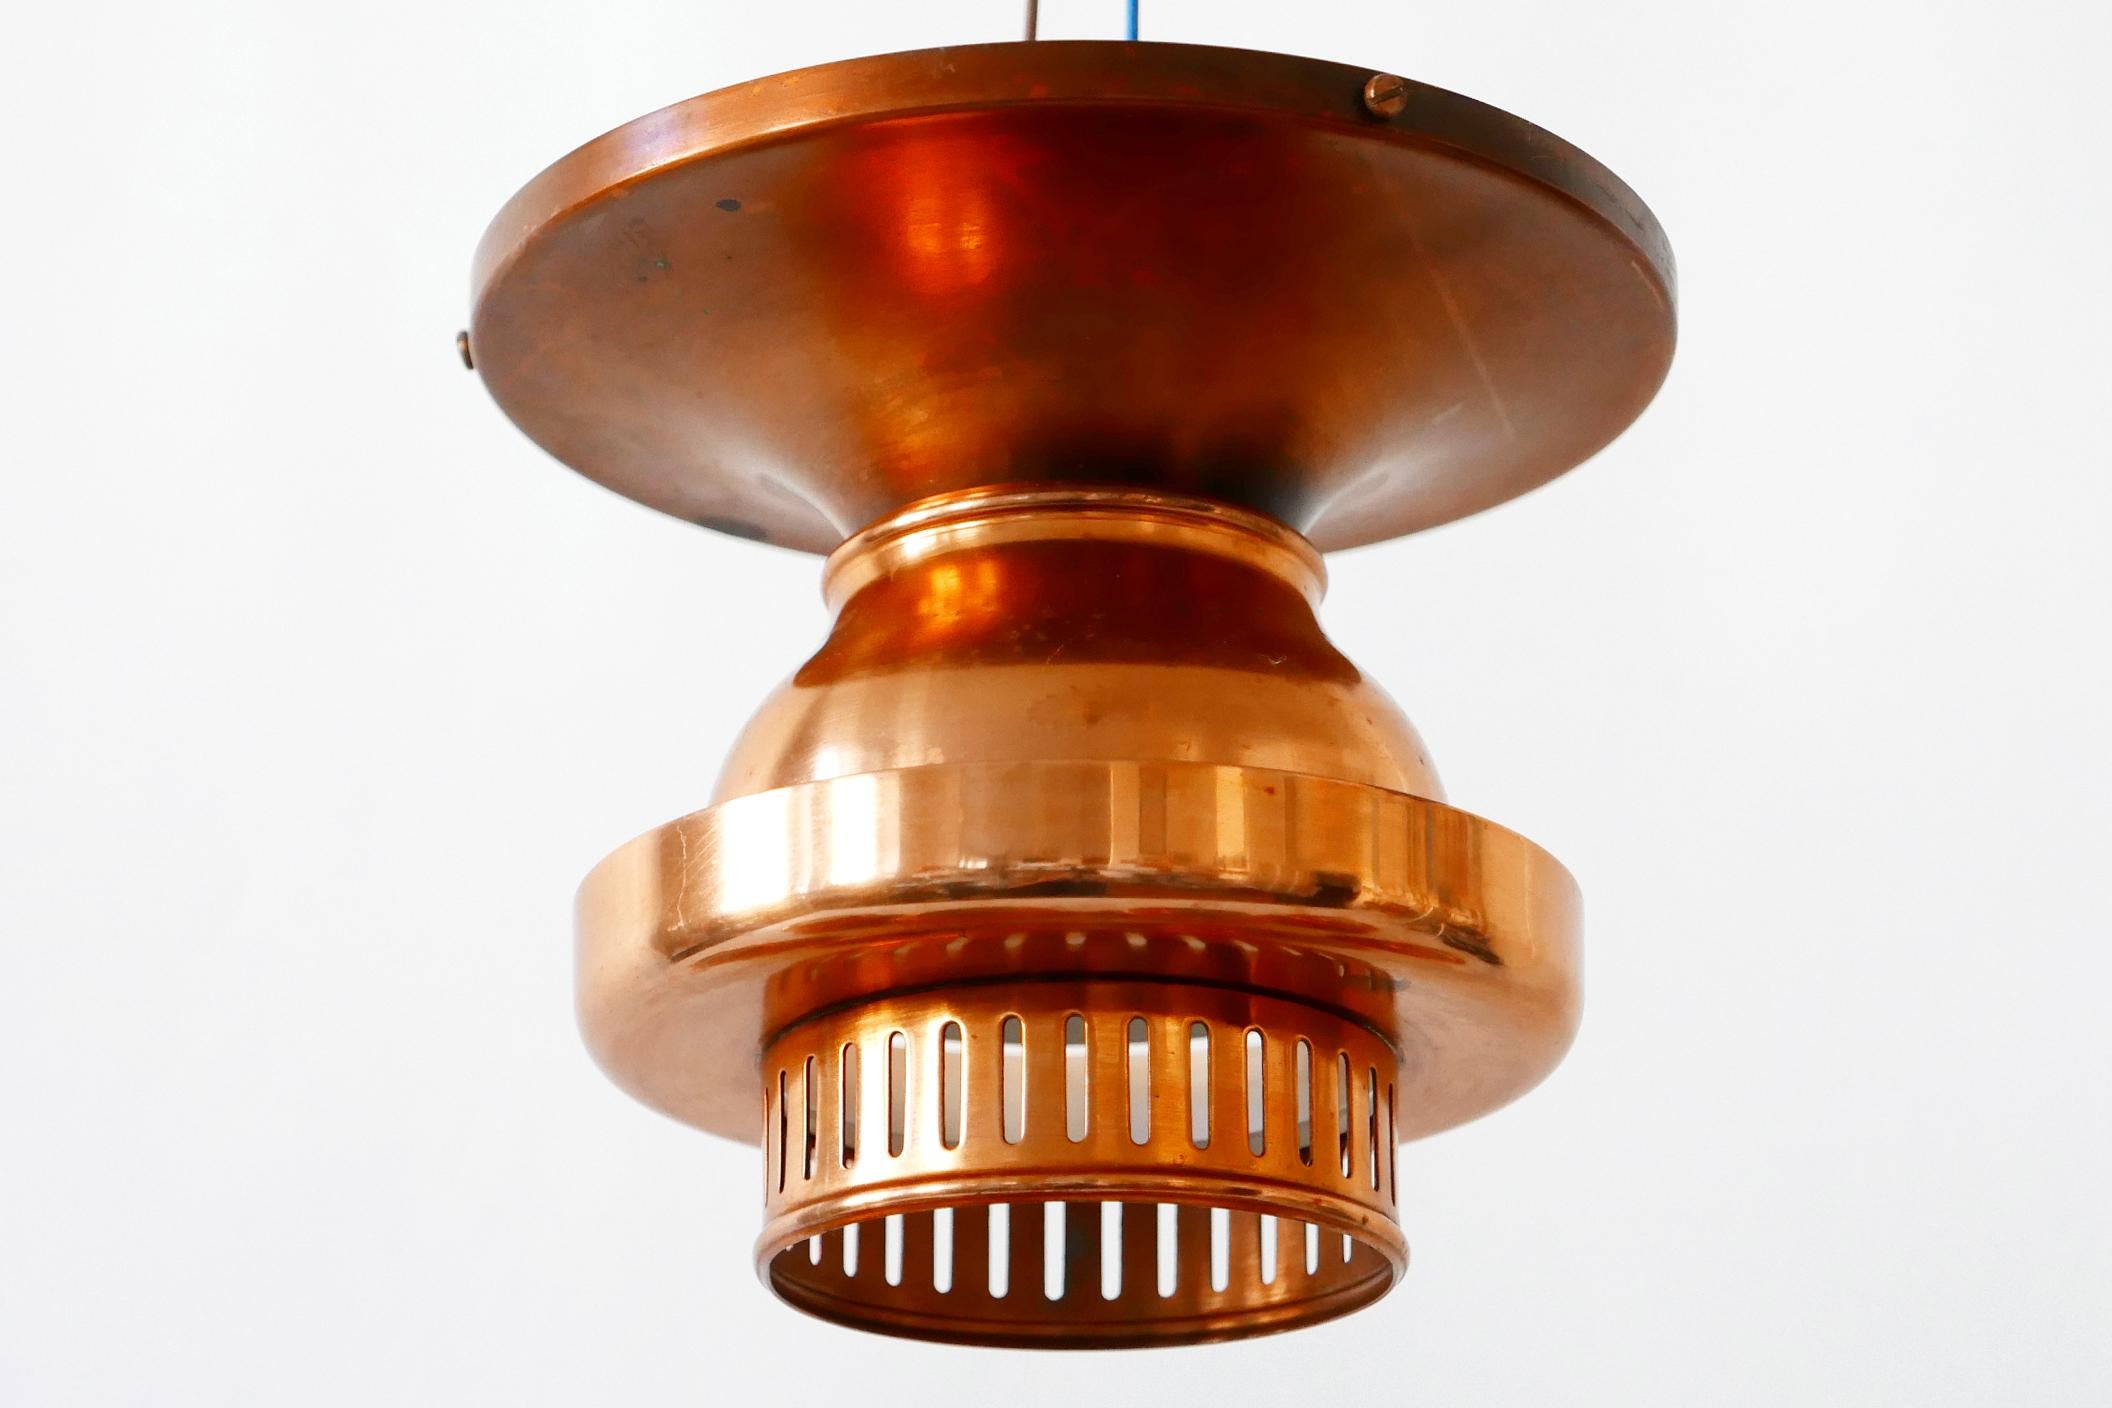 Elegant Mid-Century Modern Copper Ceiling Lamps or Flush Mounts, 1960s, Denmark For Sale 1